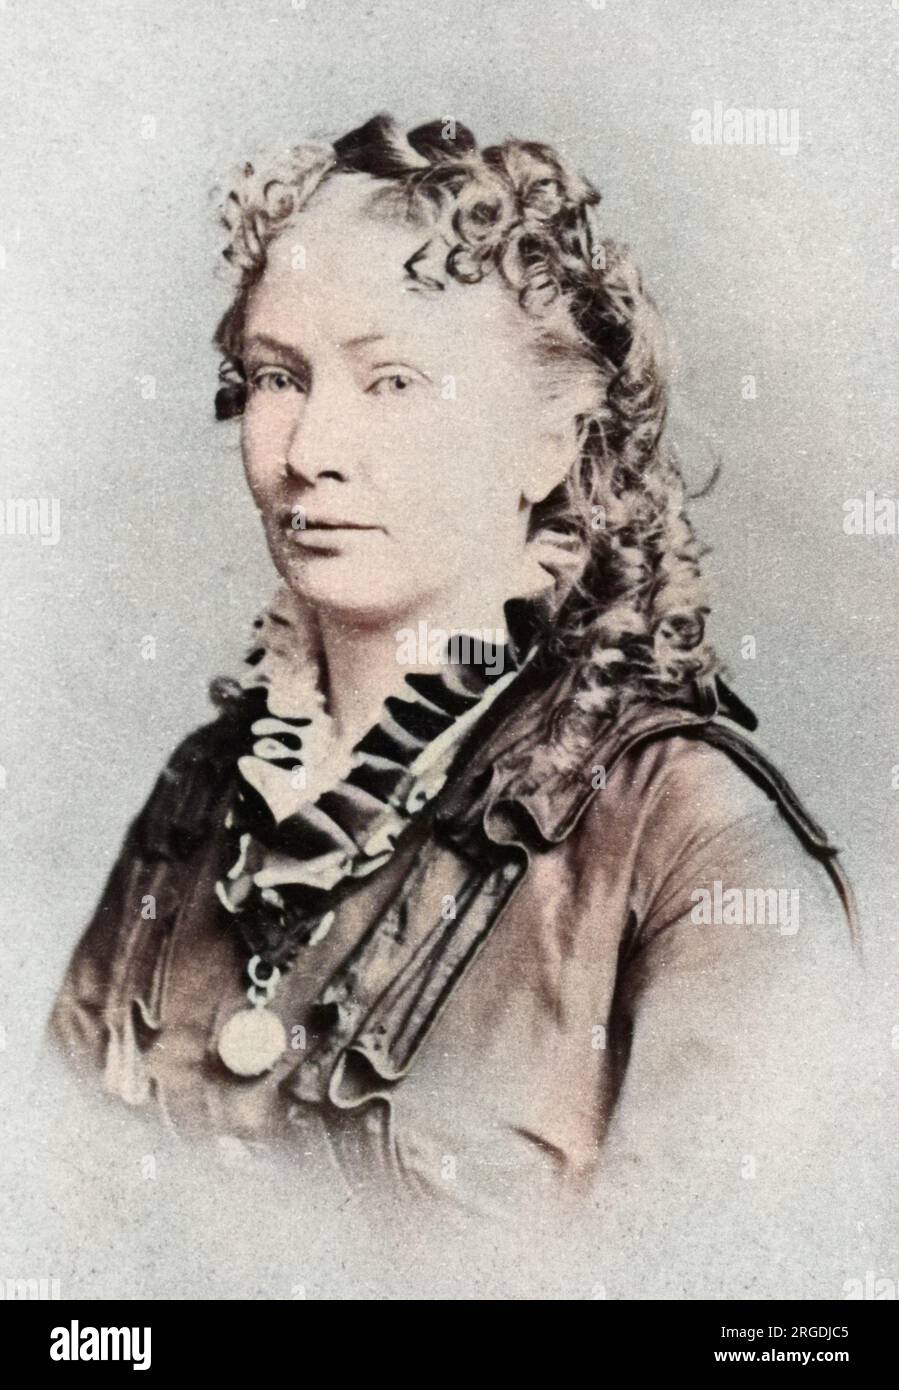 Cora Lodencia Veronica Scott (1840-1923), médium spiritualiste américain. Elle s'est mariée quatre fois et a adopté le nom de famille de son mari à chaque fois (Hatch, Daniels, Tappan et Richmond). Banque D'Images